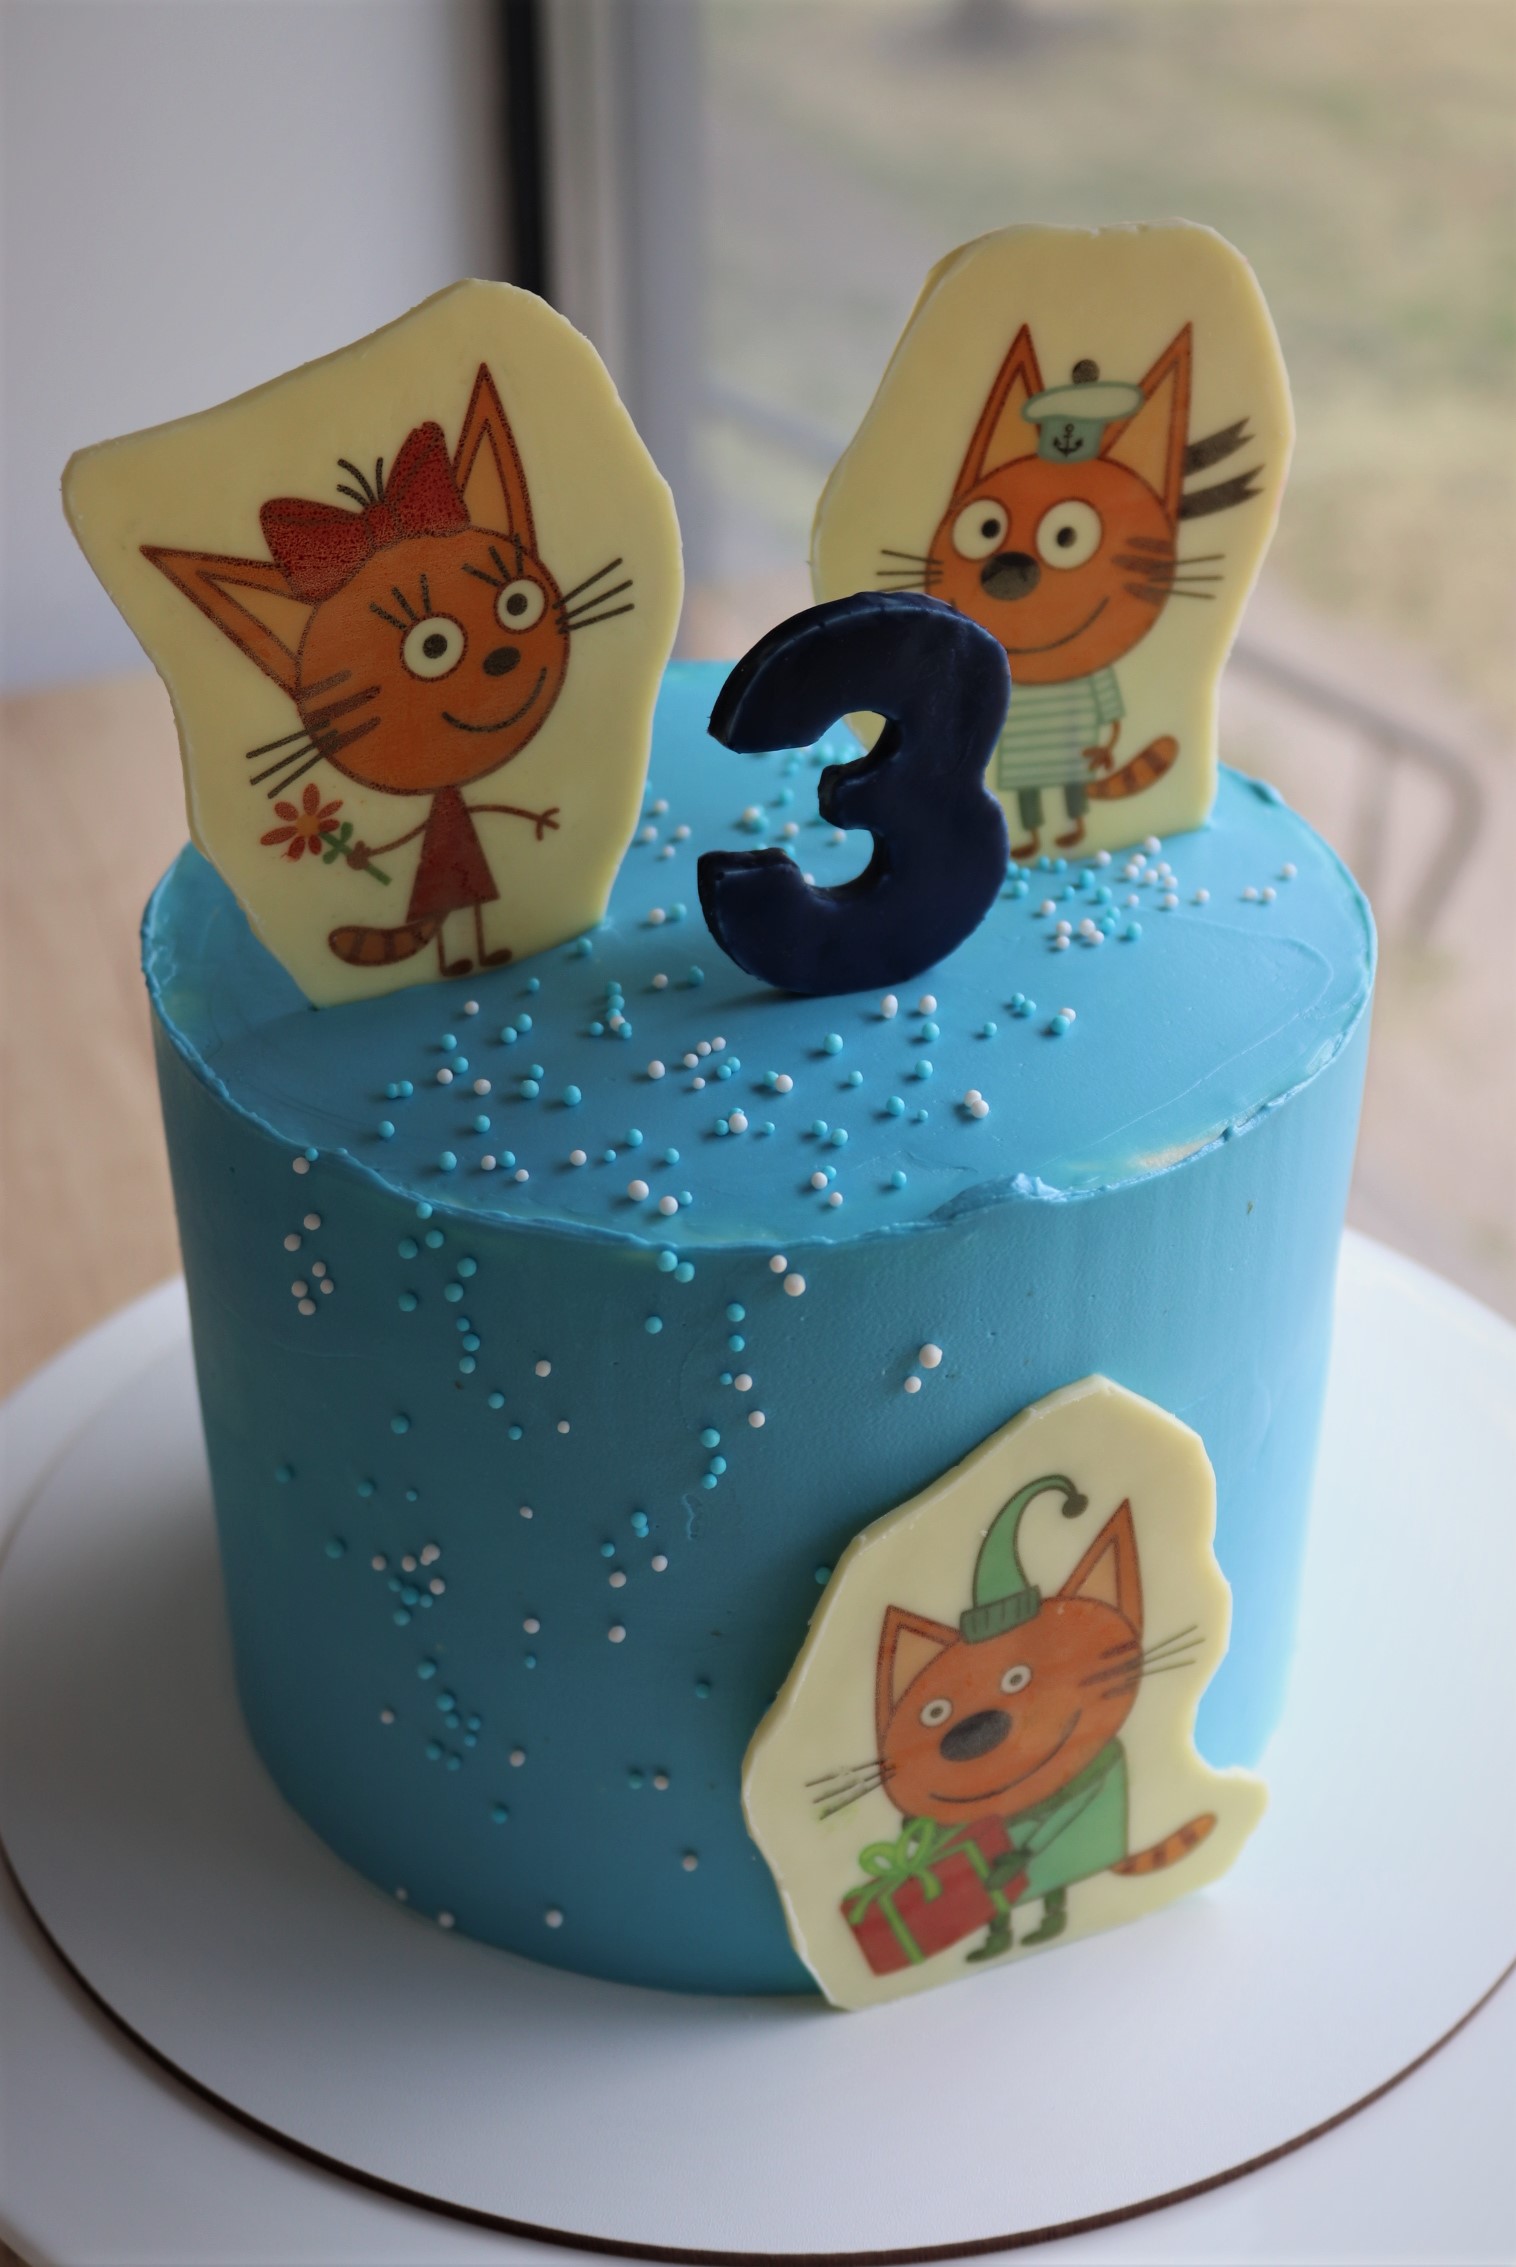 Популярные мульт персонажи Три Кота дополняют этот невероятно вкусный тортик